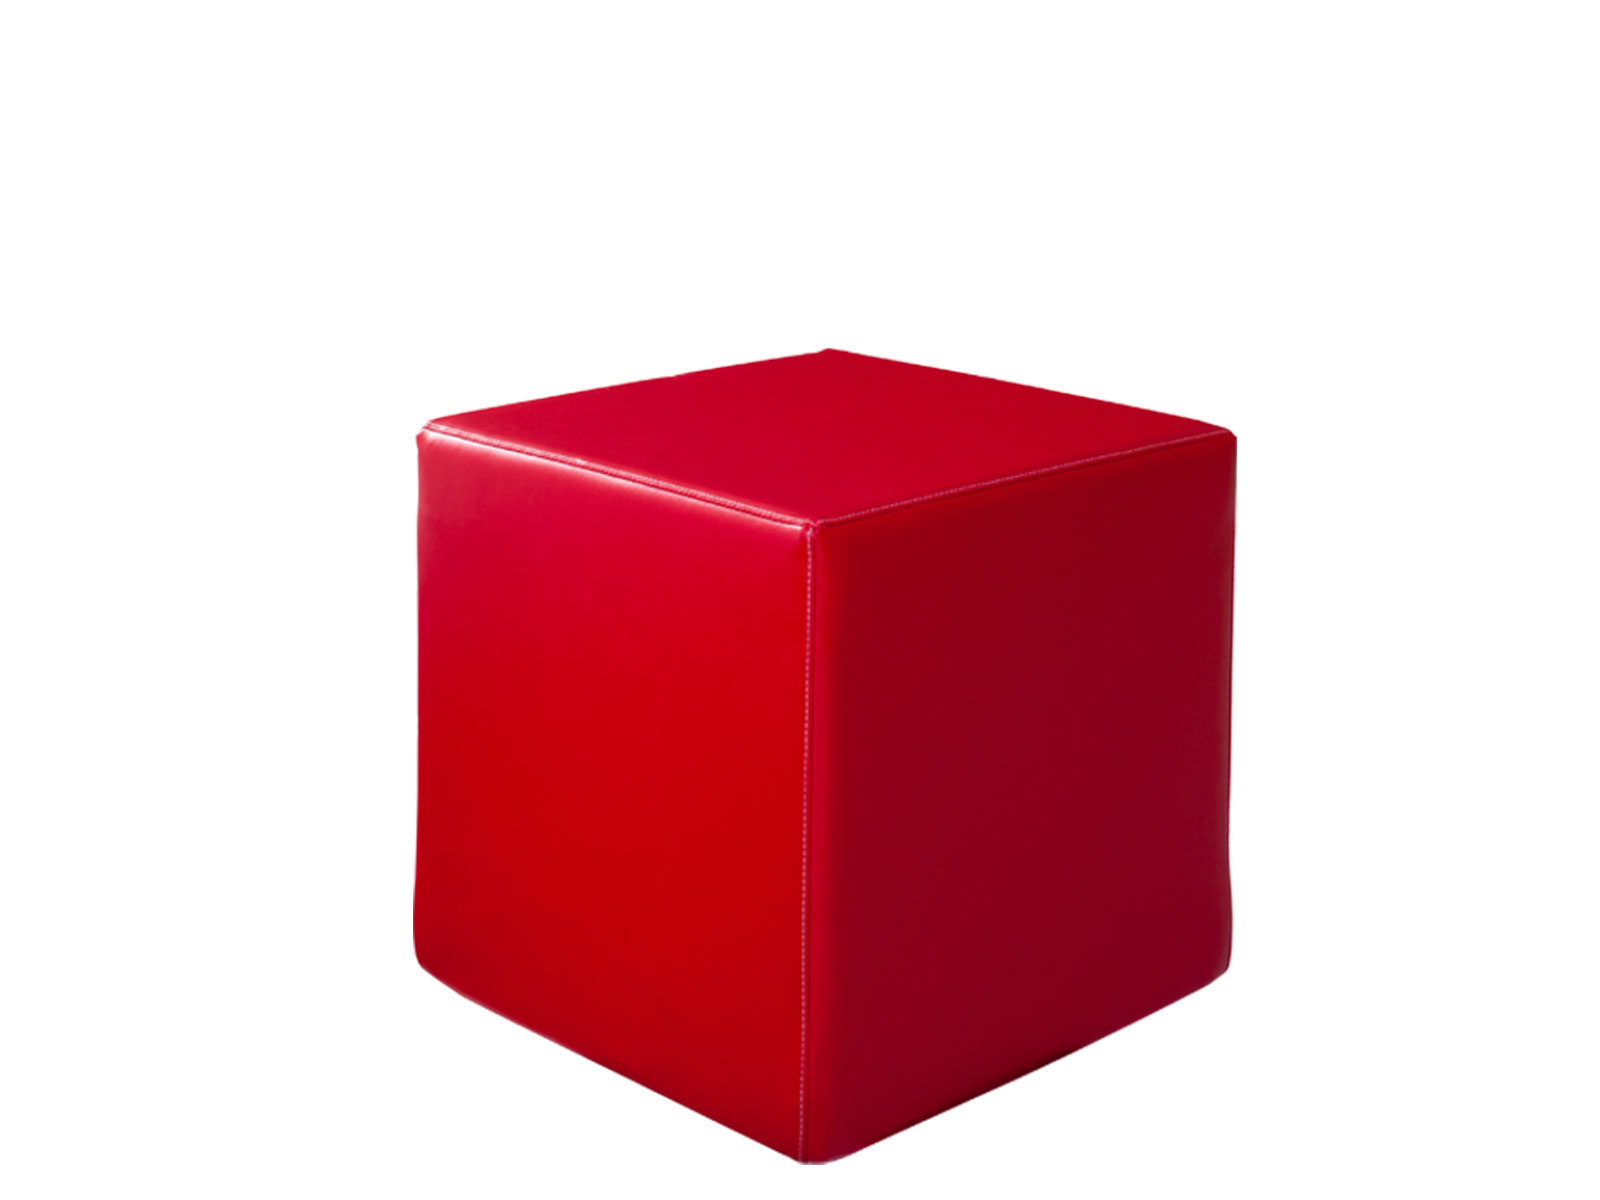 Reg kz. Красный кубик. Красные кубики для детей. Кубические предметы. Куб фигура.